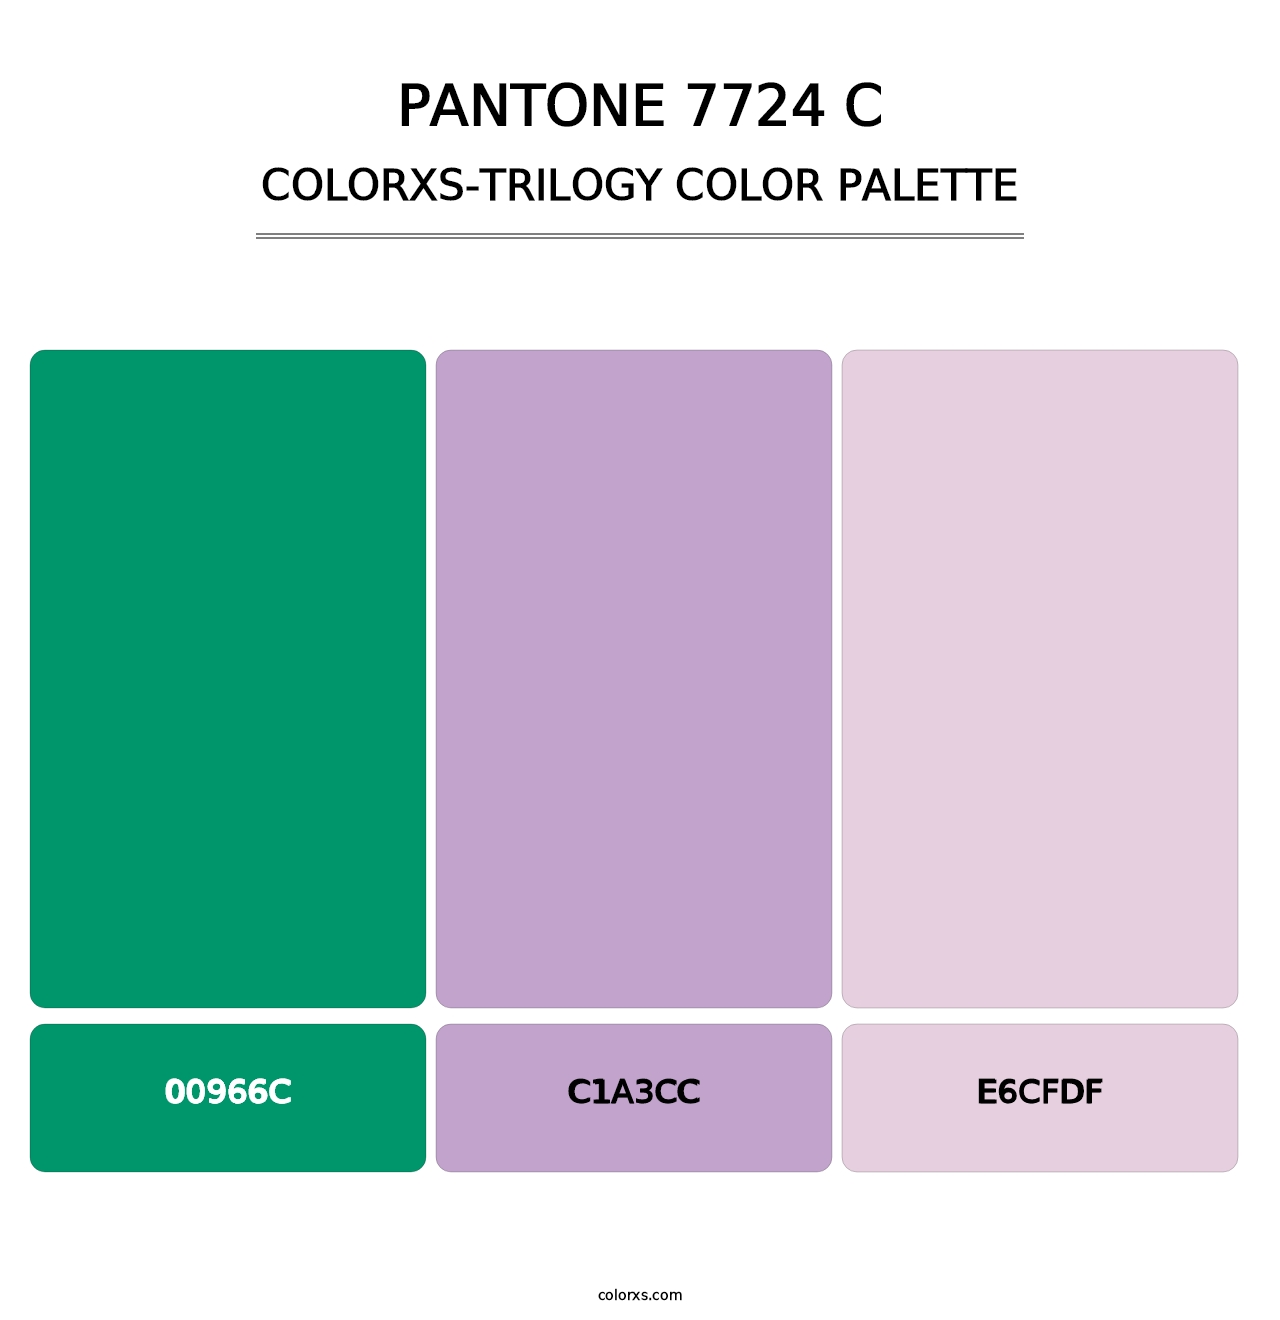 PANTONE 7724 C - Colorxs Trilogy Palette